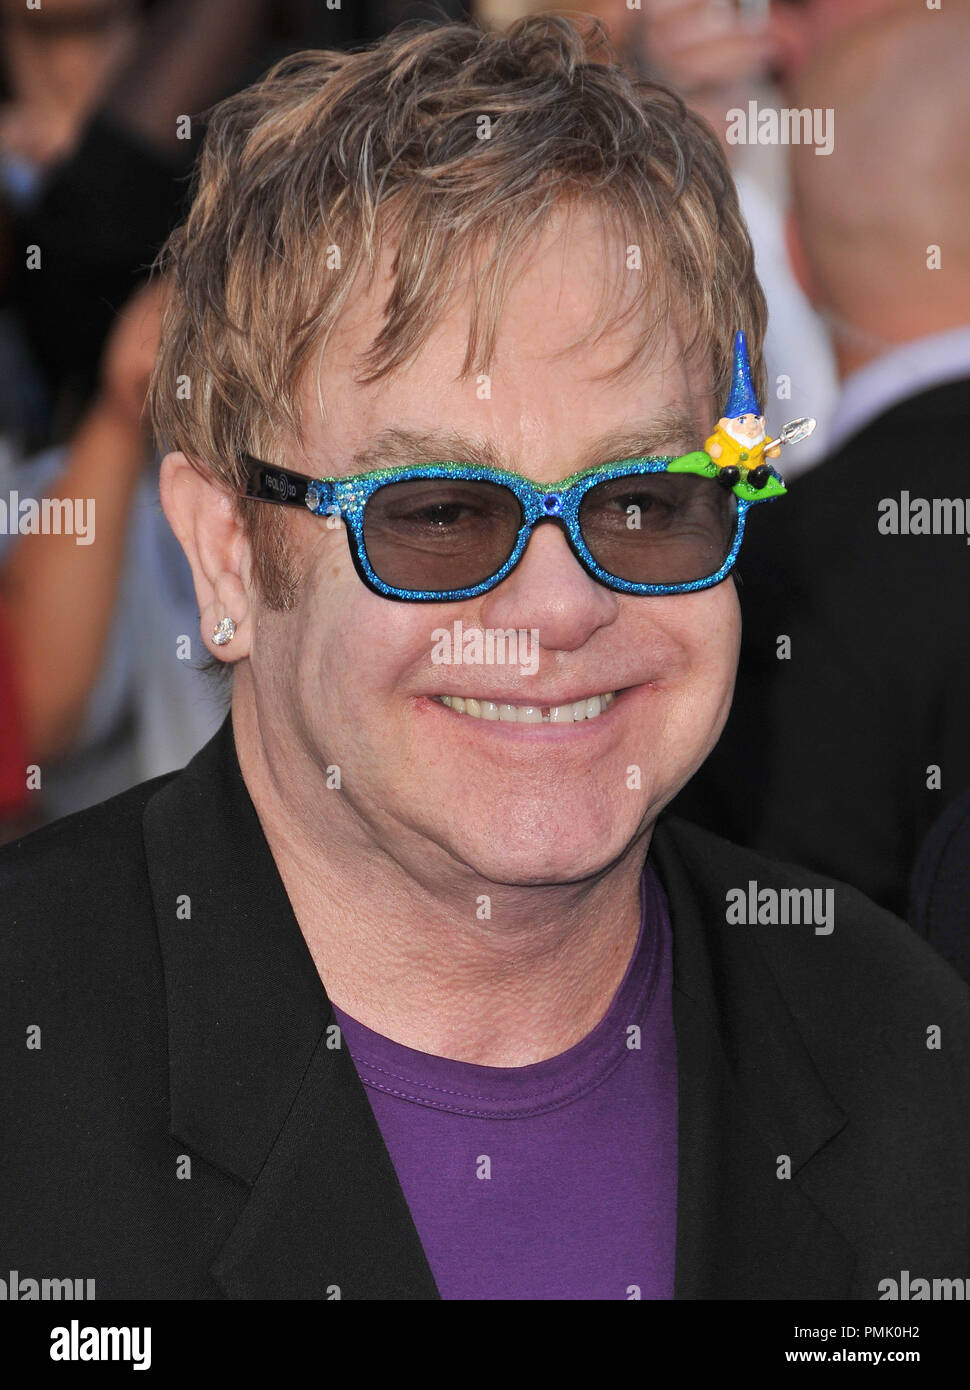 Elton John en el estreno mundial de "Gnomeo & Juliet", que se celebró en El Capitan Theatre de Hollywood, CA. El evento tuvo lugar el domingo, 23 de enero de 2011. Foto por PRPP Pacific Rim Fotografía de Prensa/ PictureLux Foto de stock